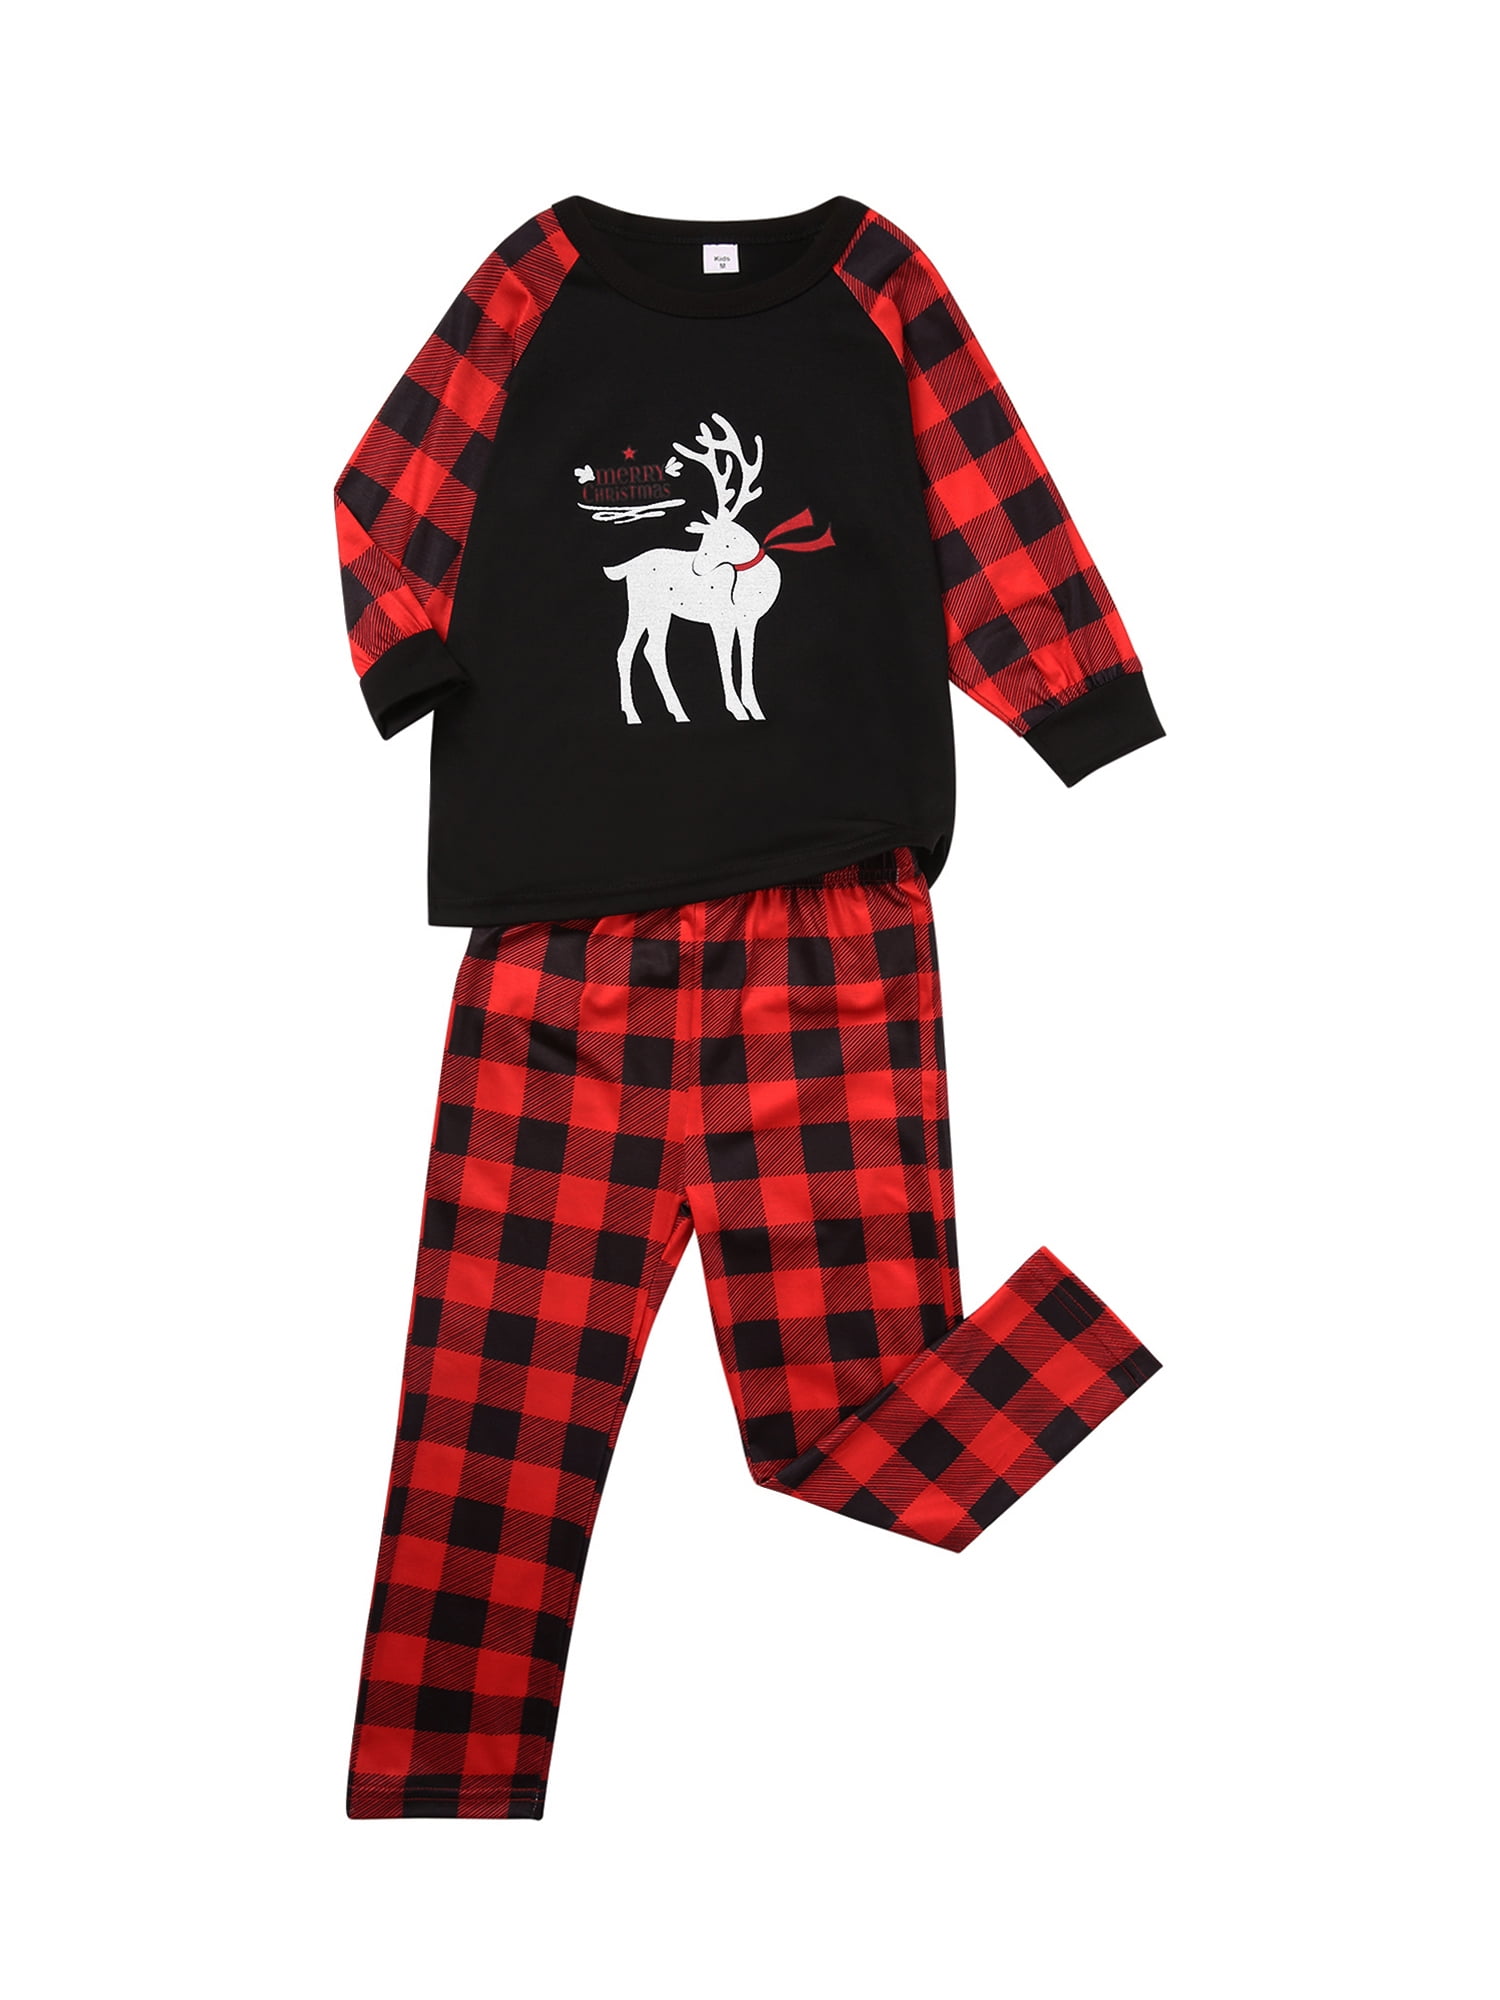 Kids Clothes CieKen Baby Boys Girls Deer T Shirt Top Red Black Plaid Cotton Pants 2 Pcs Outfits Casual Suit